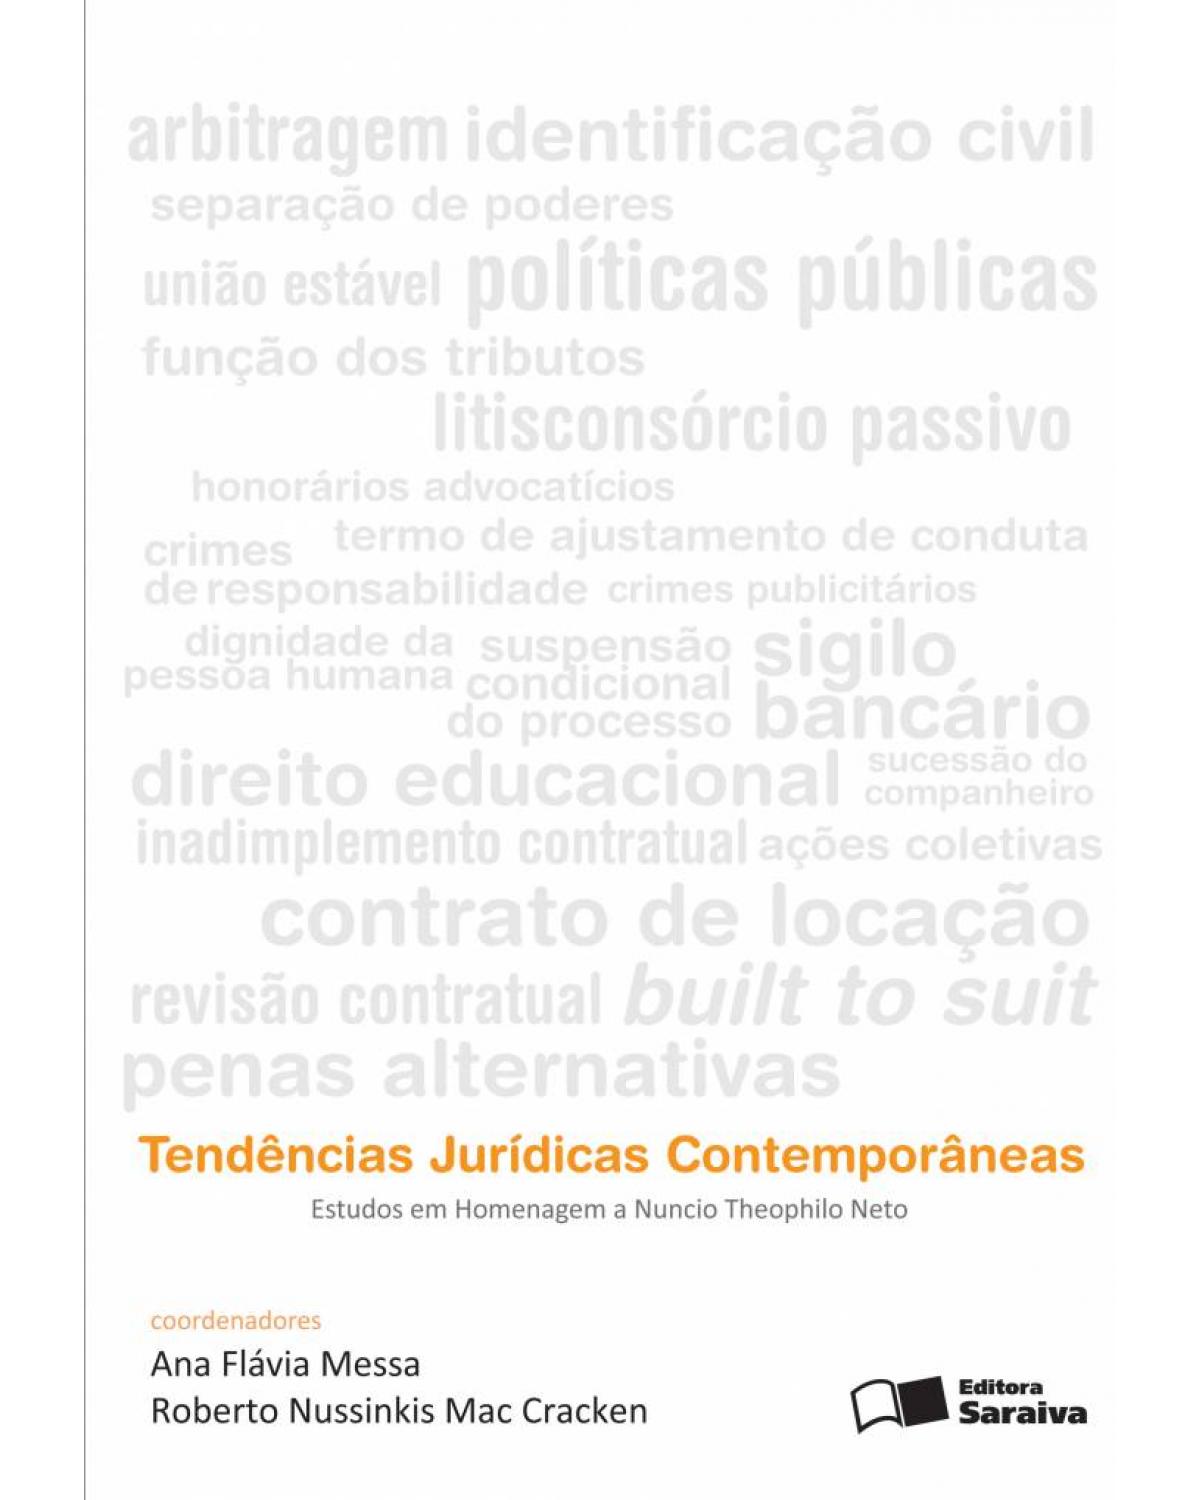 Tendências jurídicas contemporâneas - estudos em homenagem a Nuncio Theophilo Neto - 1ª Edição | 2011